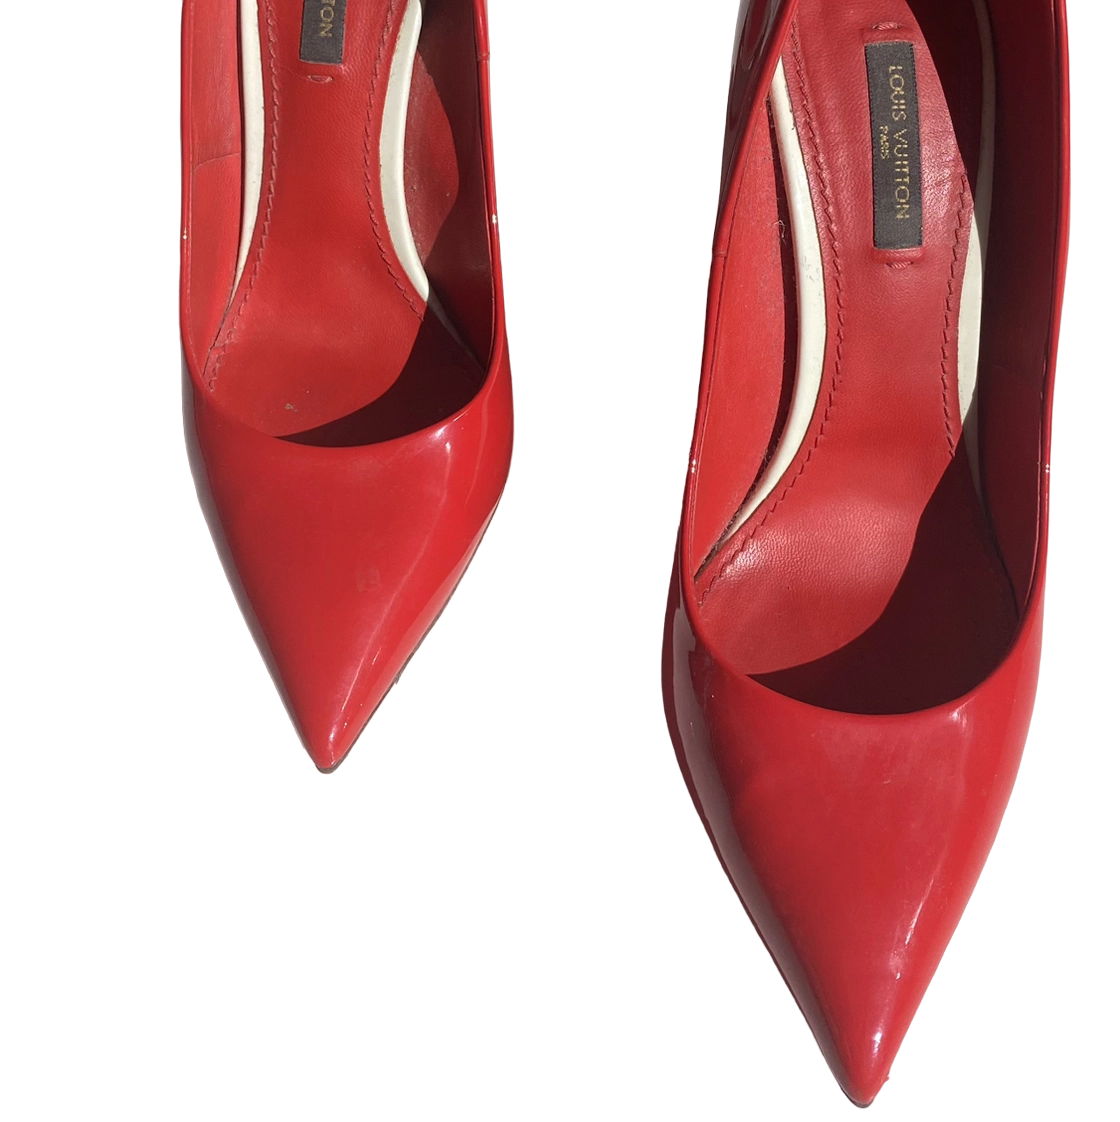 Louis Vuitton Tacones Rojo 86% OFF - Portèlo: Compra y Vende Moda de Lujo.